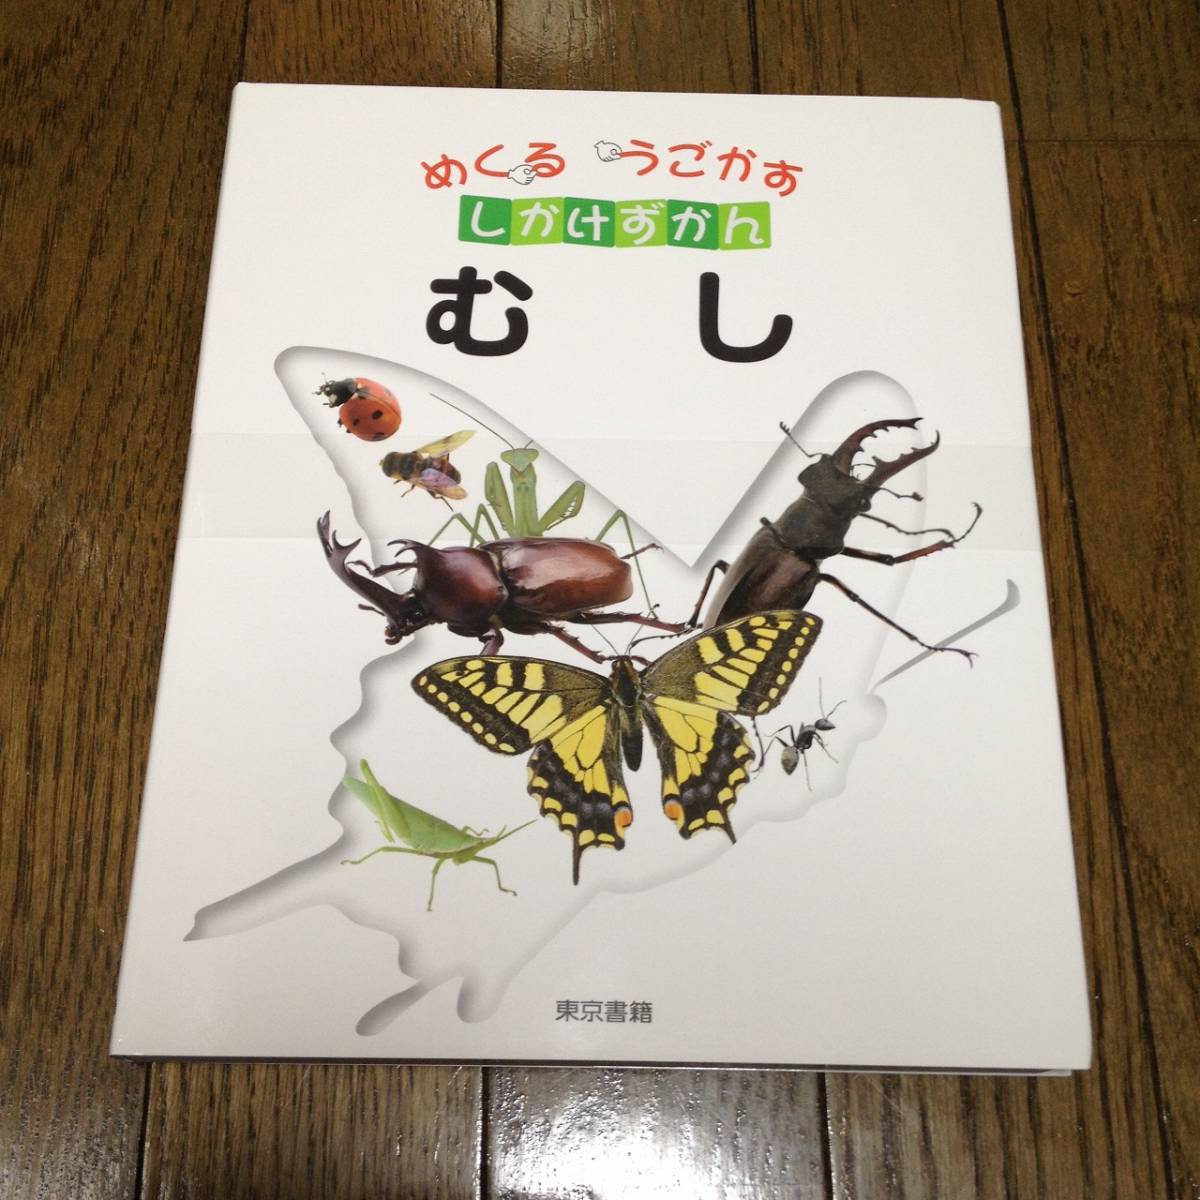  новый товар ......... только .......... насекомое иллюстрированная книга 